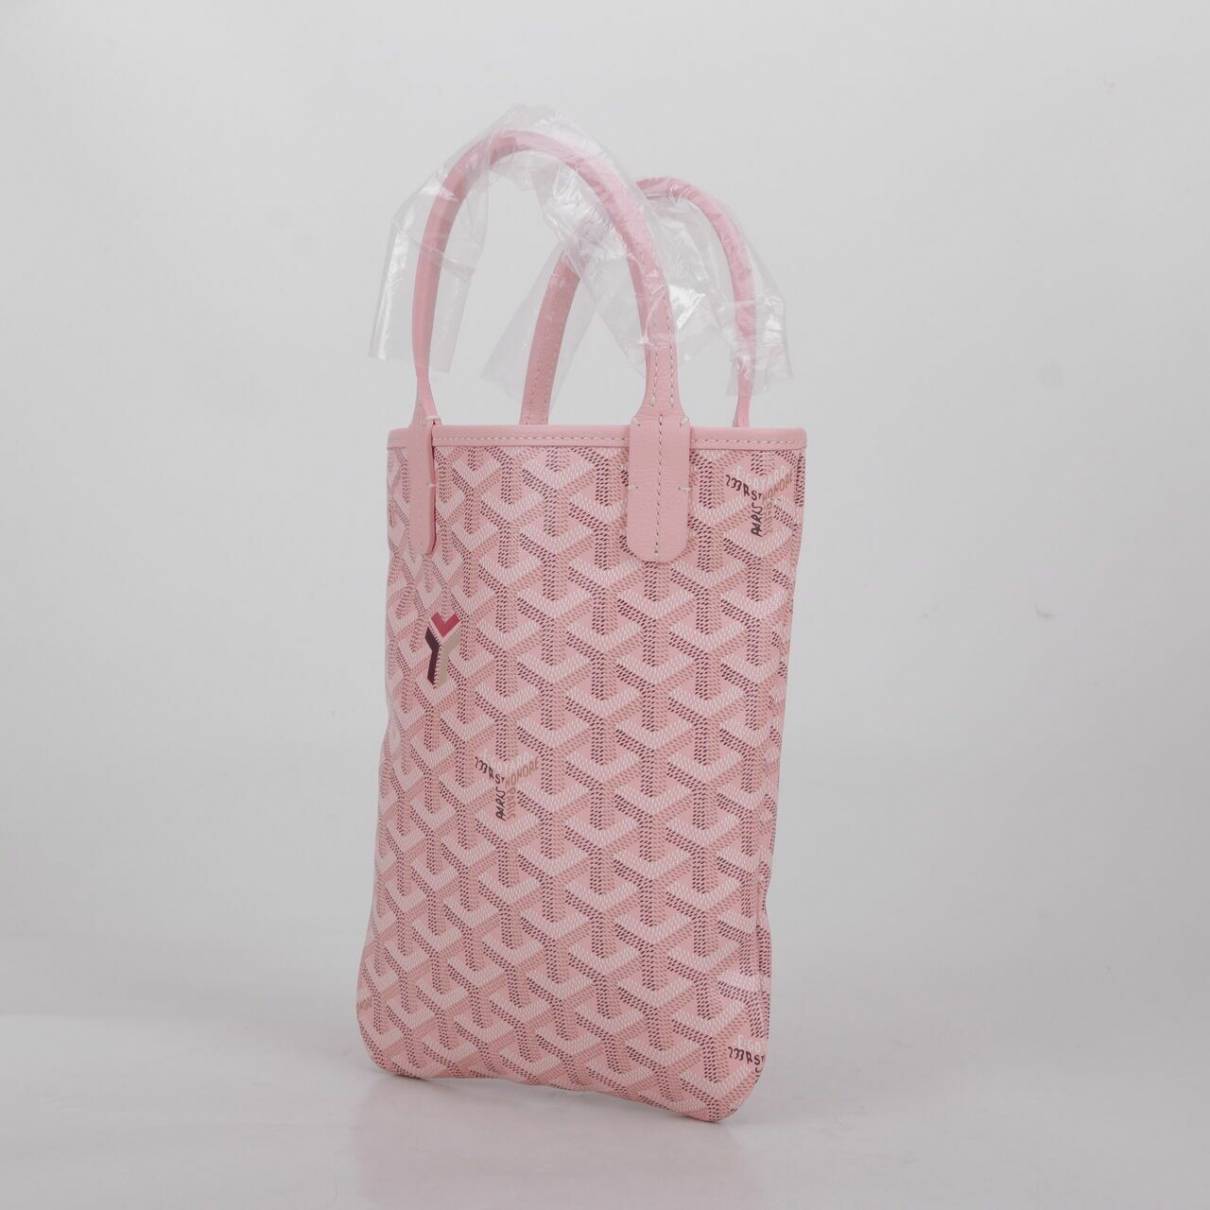 goyard tote bag pink